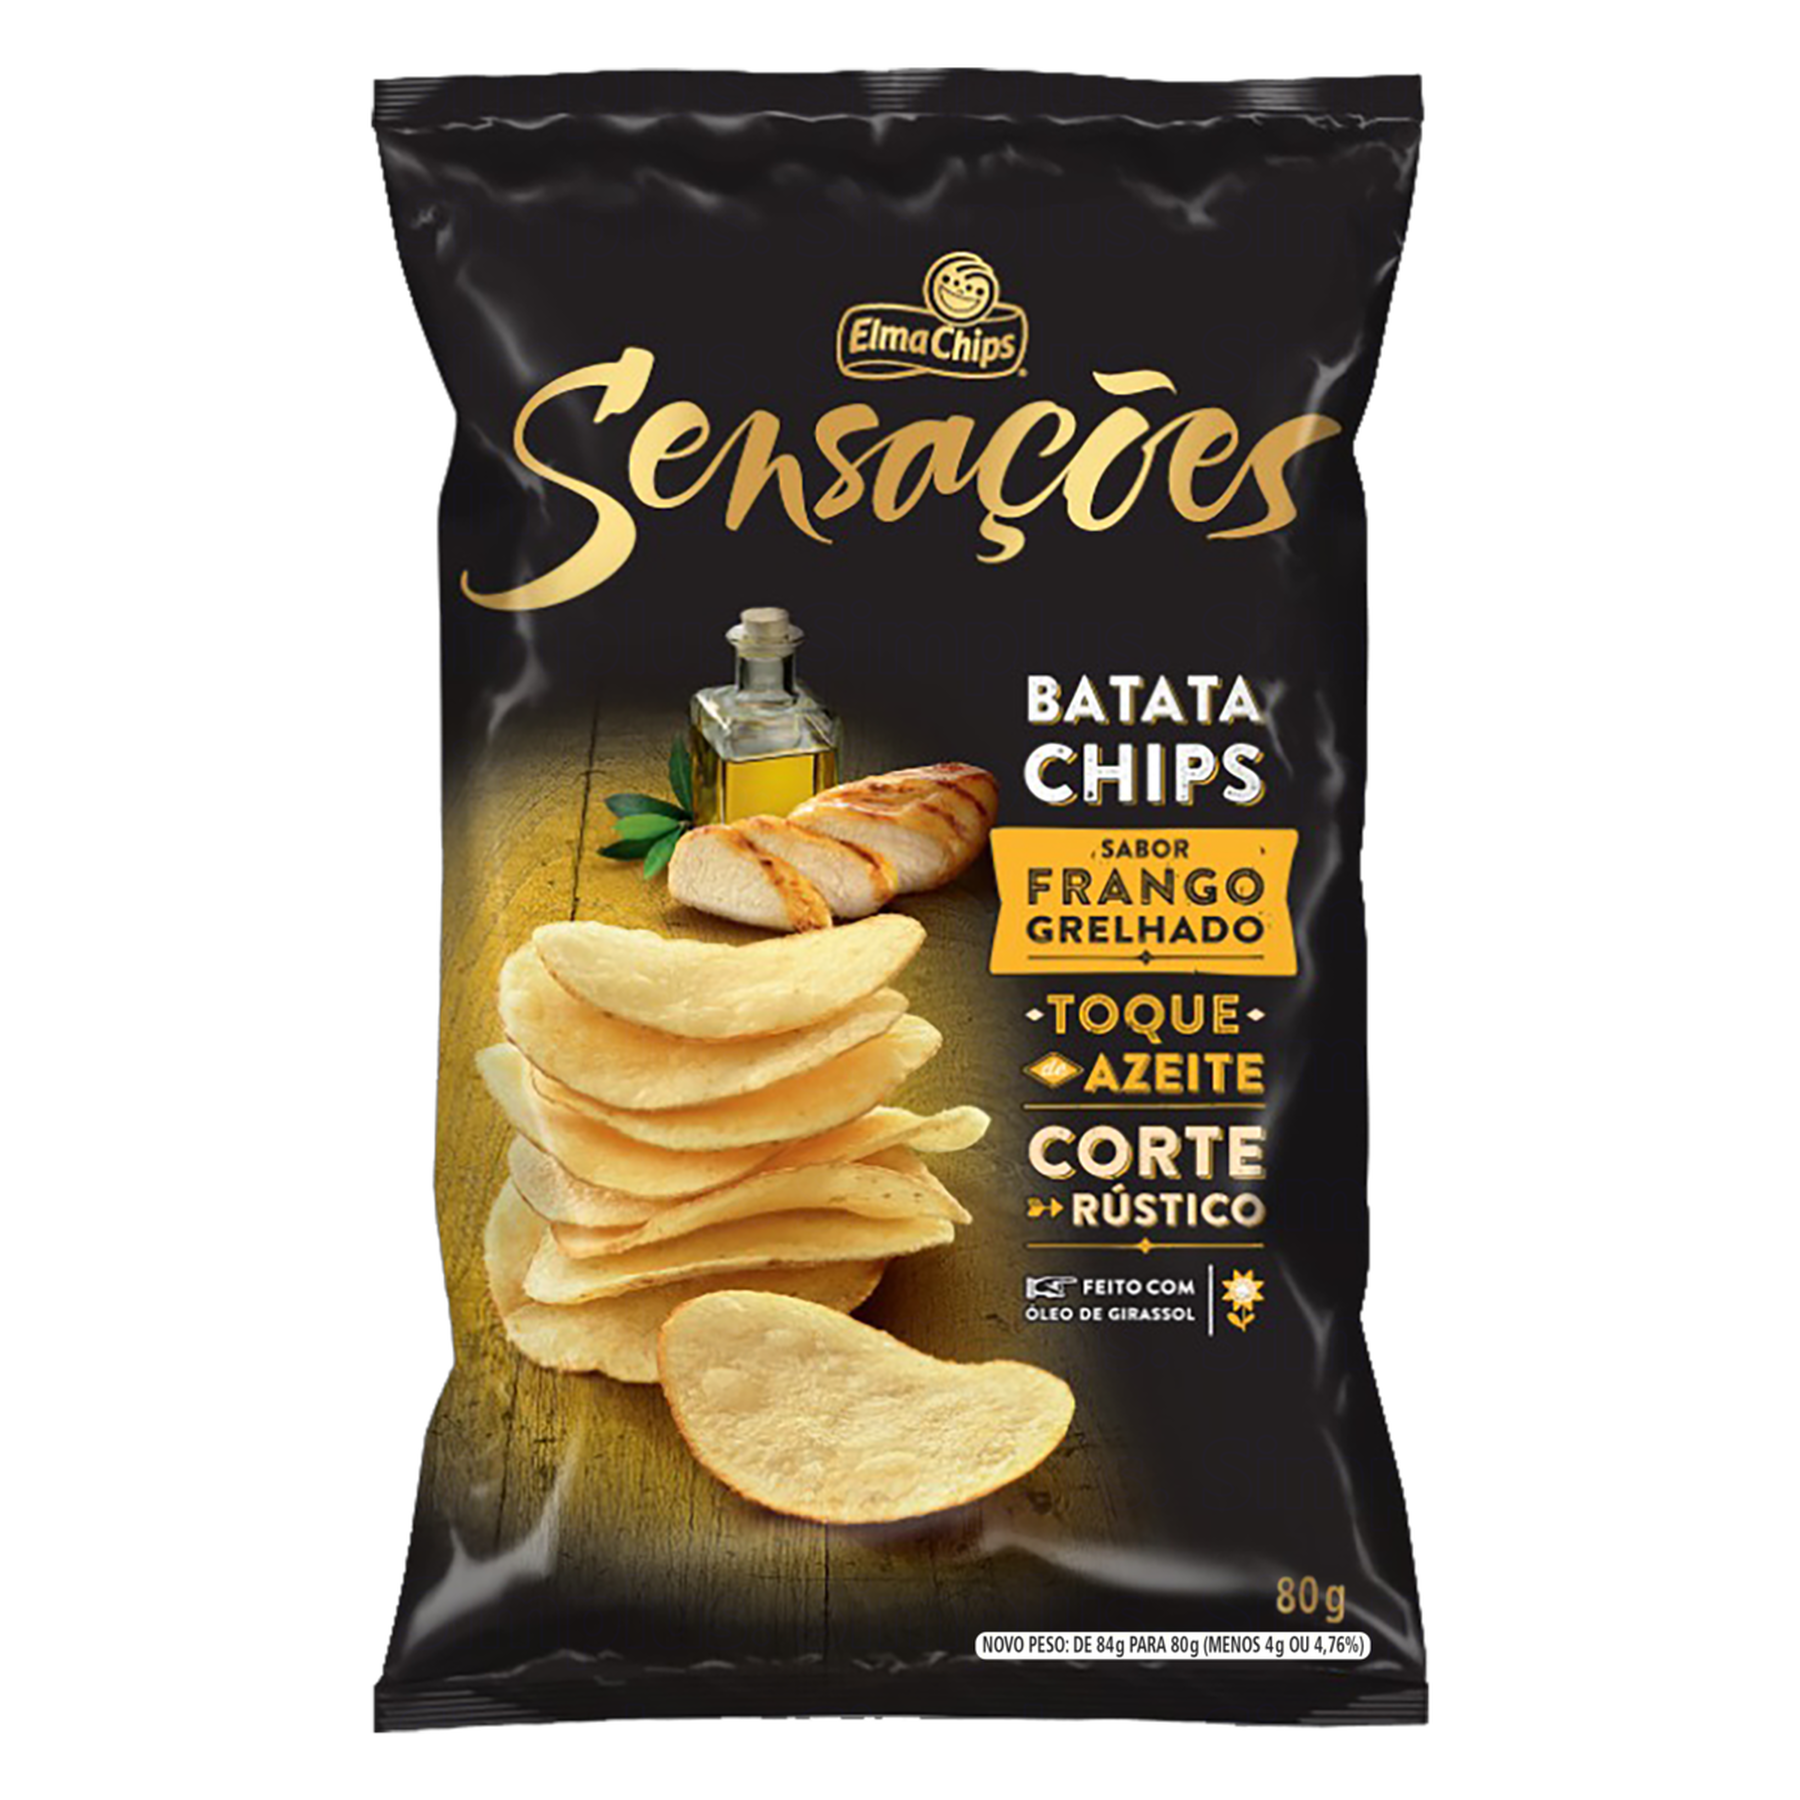 Batata Chips Frango Grelhado Elma Chips Sensações Pacote 80g